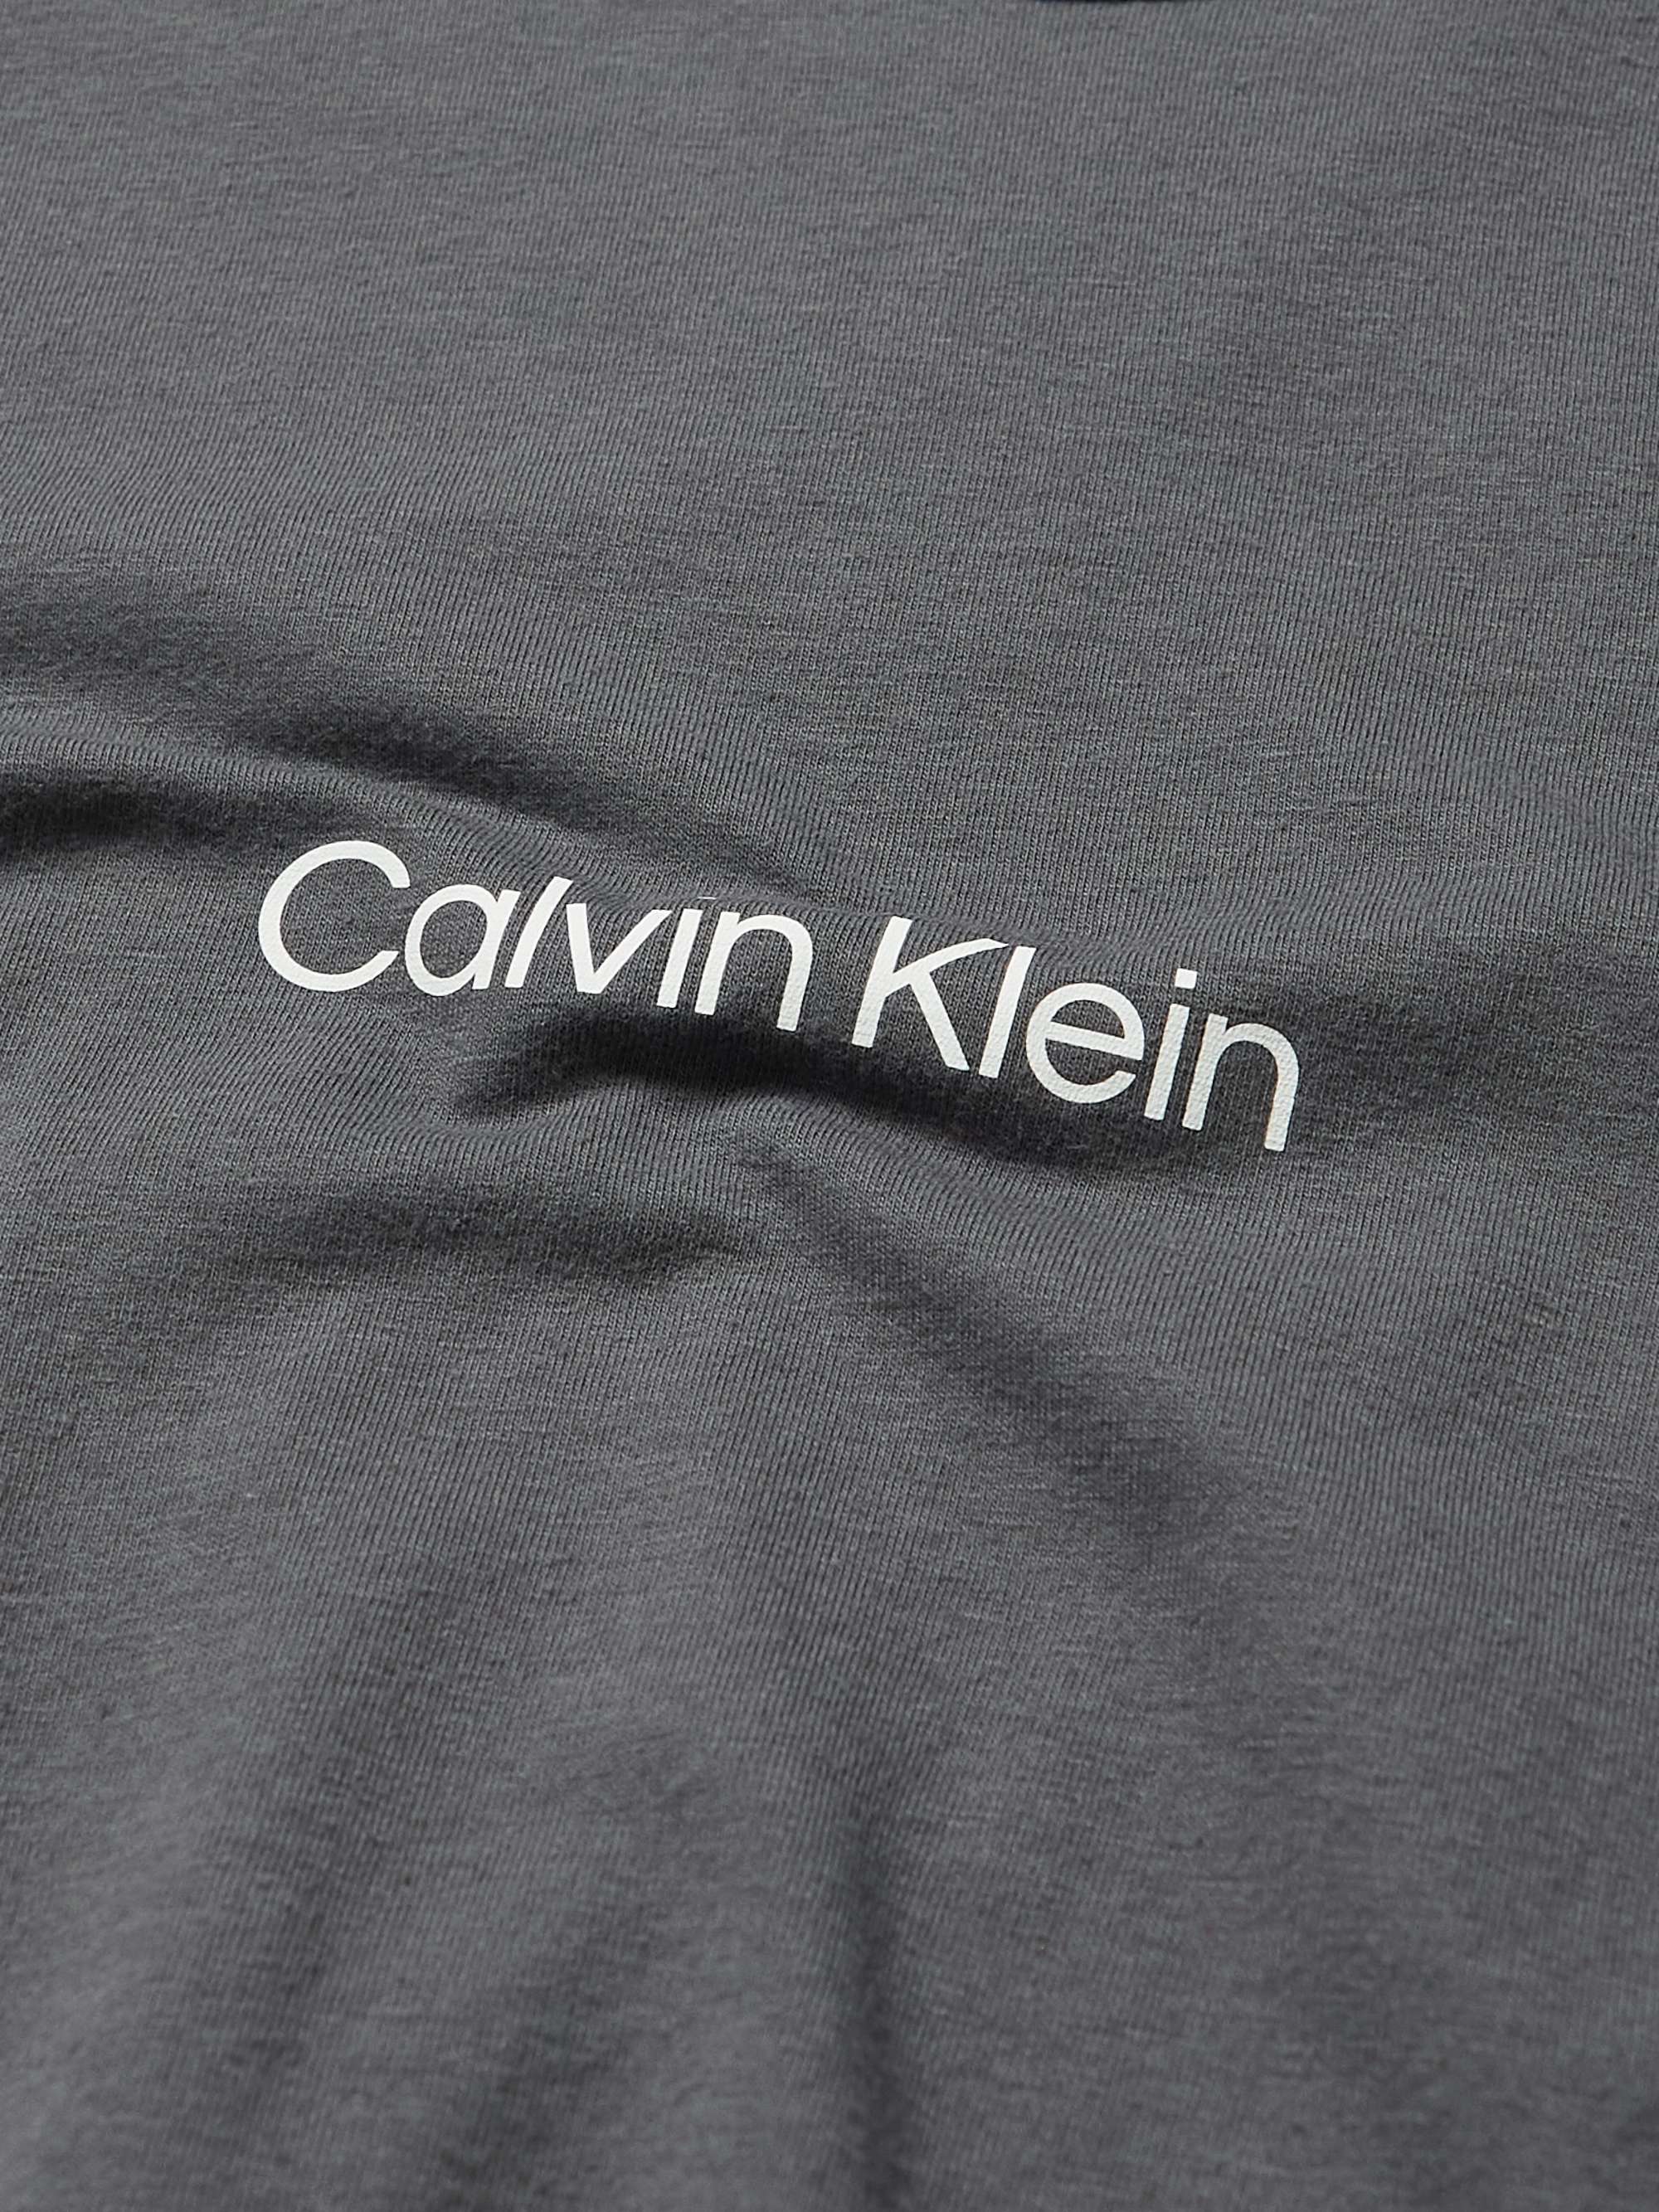 CALVIN KLEIN UNDERWEAR Modern Structure Lounge Stretch Cotton-Blend Jersey Pyjama Top